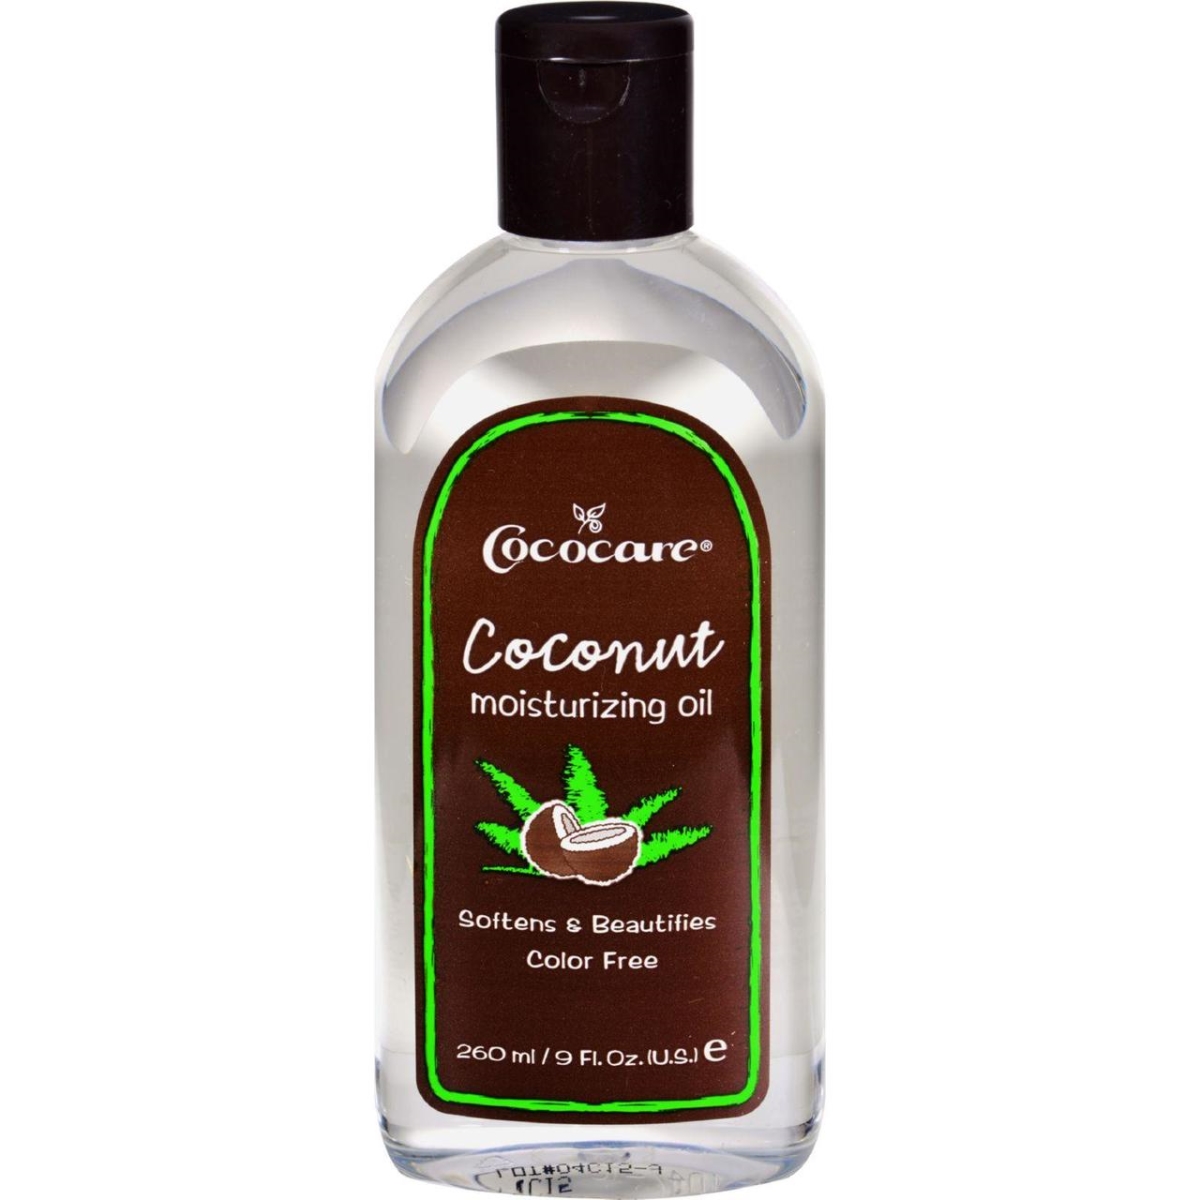 Picture of Cococare HG0409193 9 fl oz Coconut Moisturizing Oil